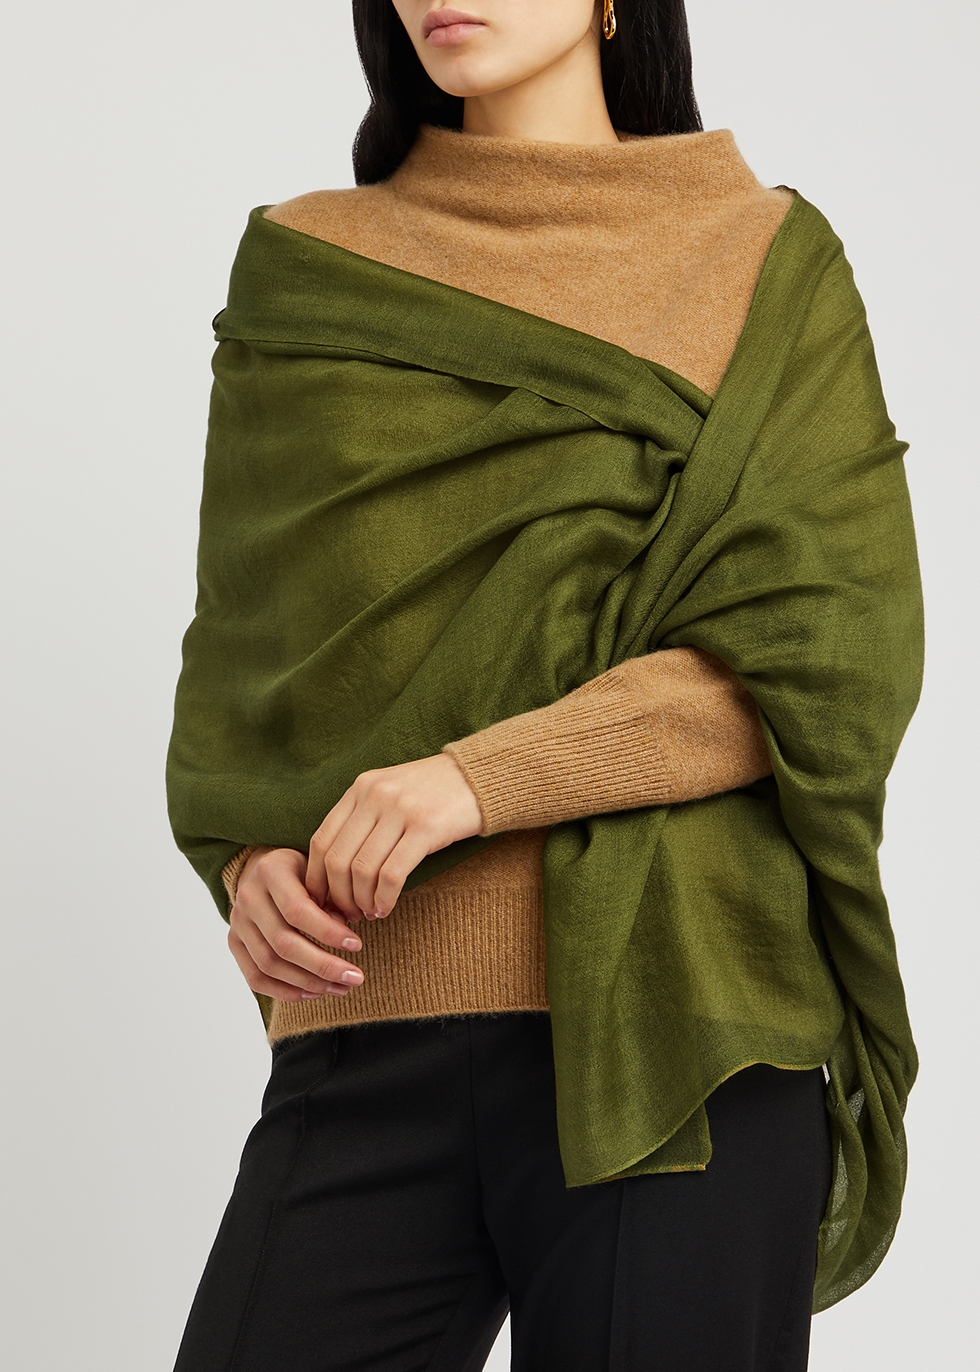 Green Single discount 92% NoName shawl MEN FASHION Accessories 